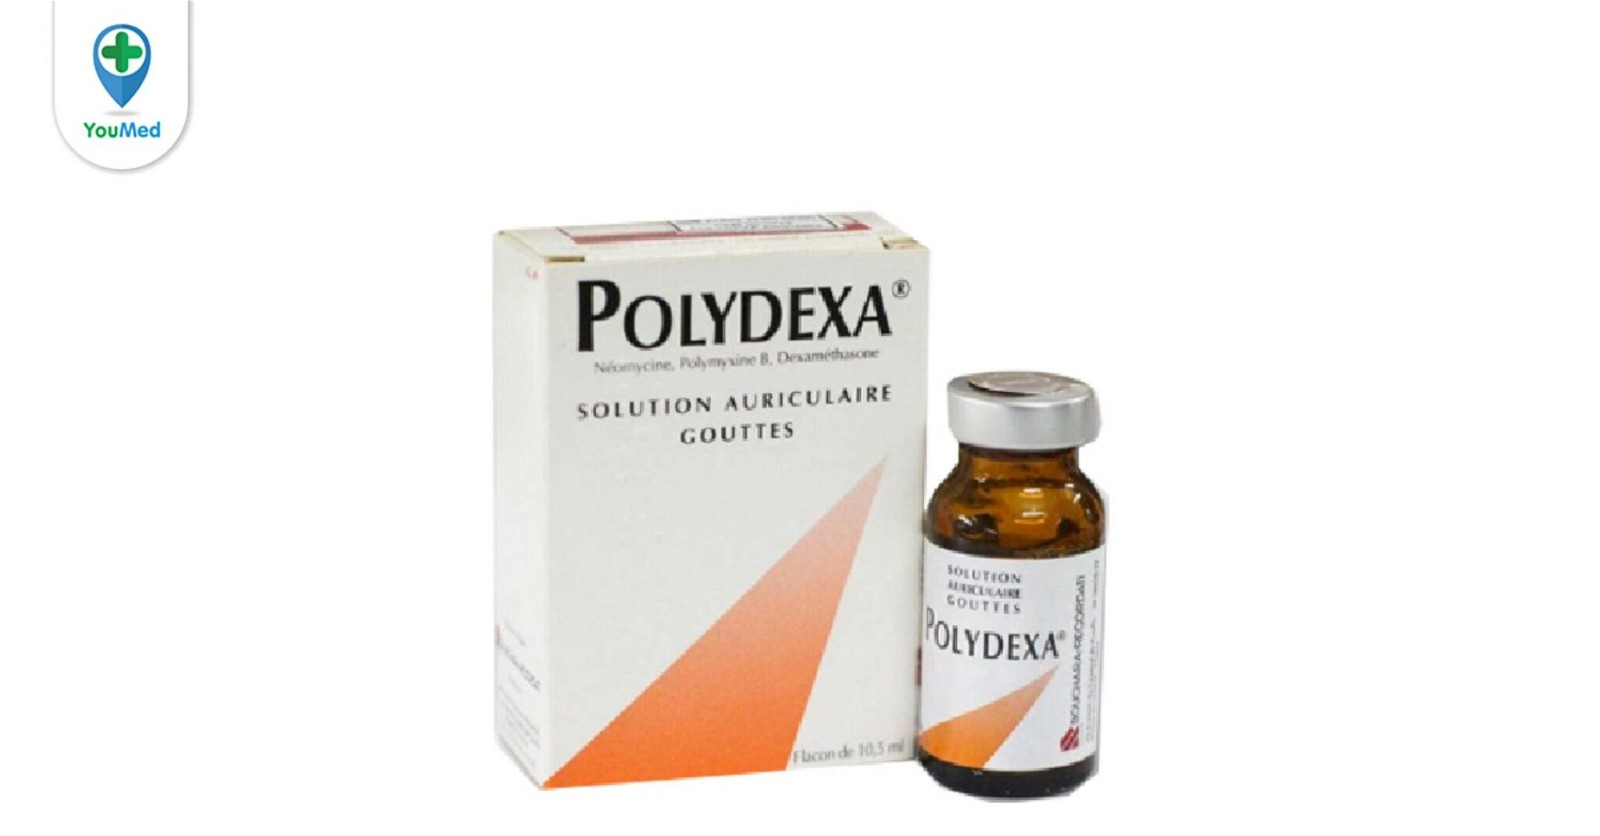 Người sử dụng thuốc Polydexa cần tuân thủ những hướng dẫn sử dụng nào?
